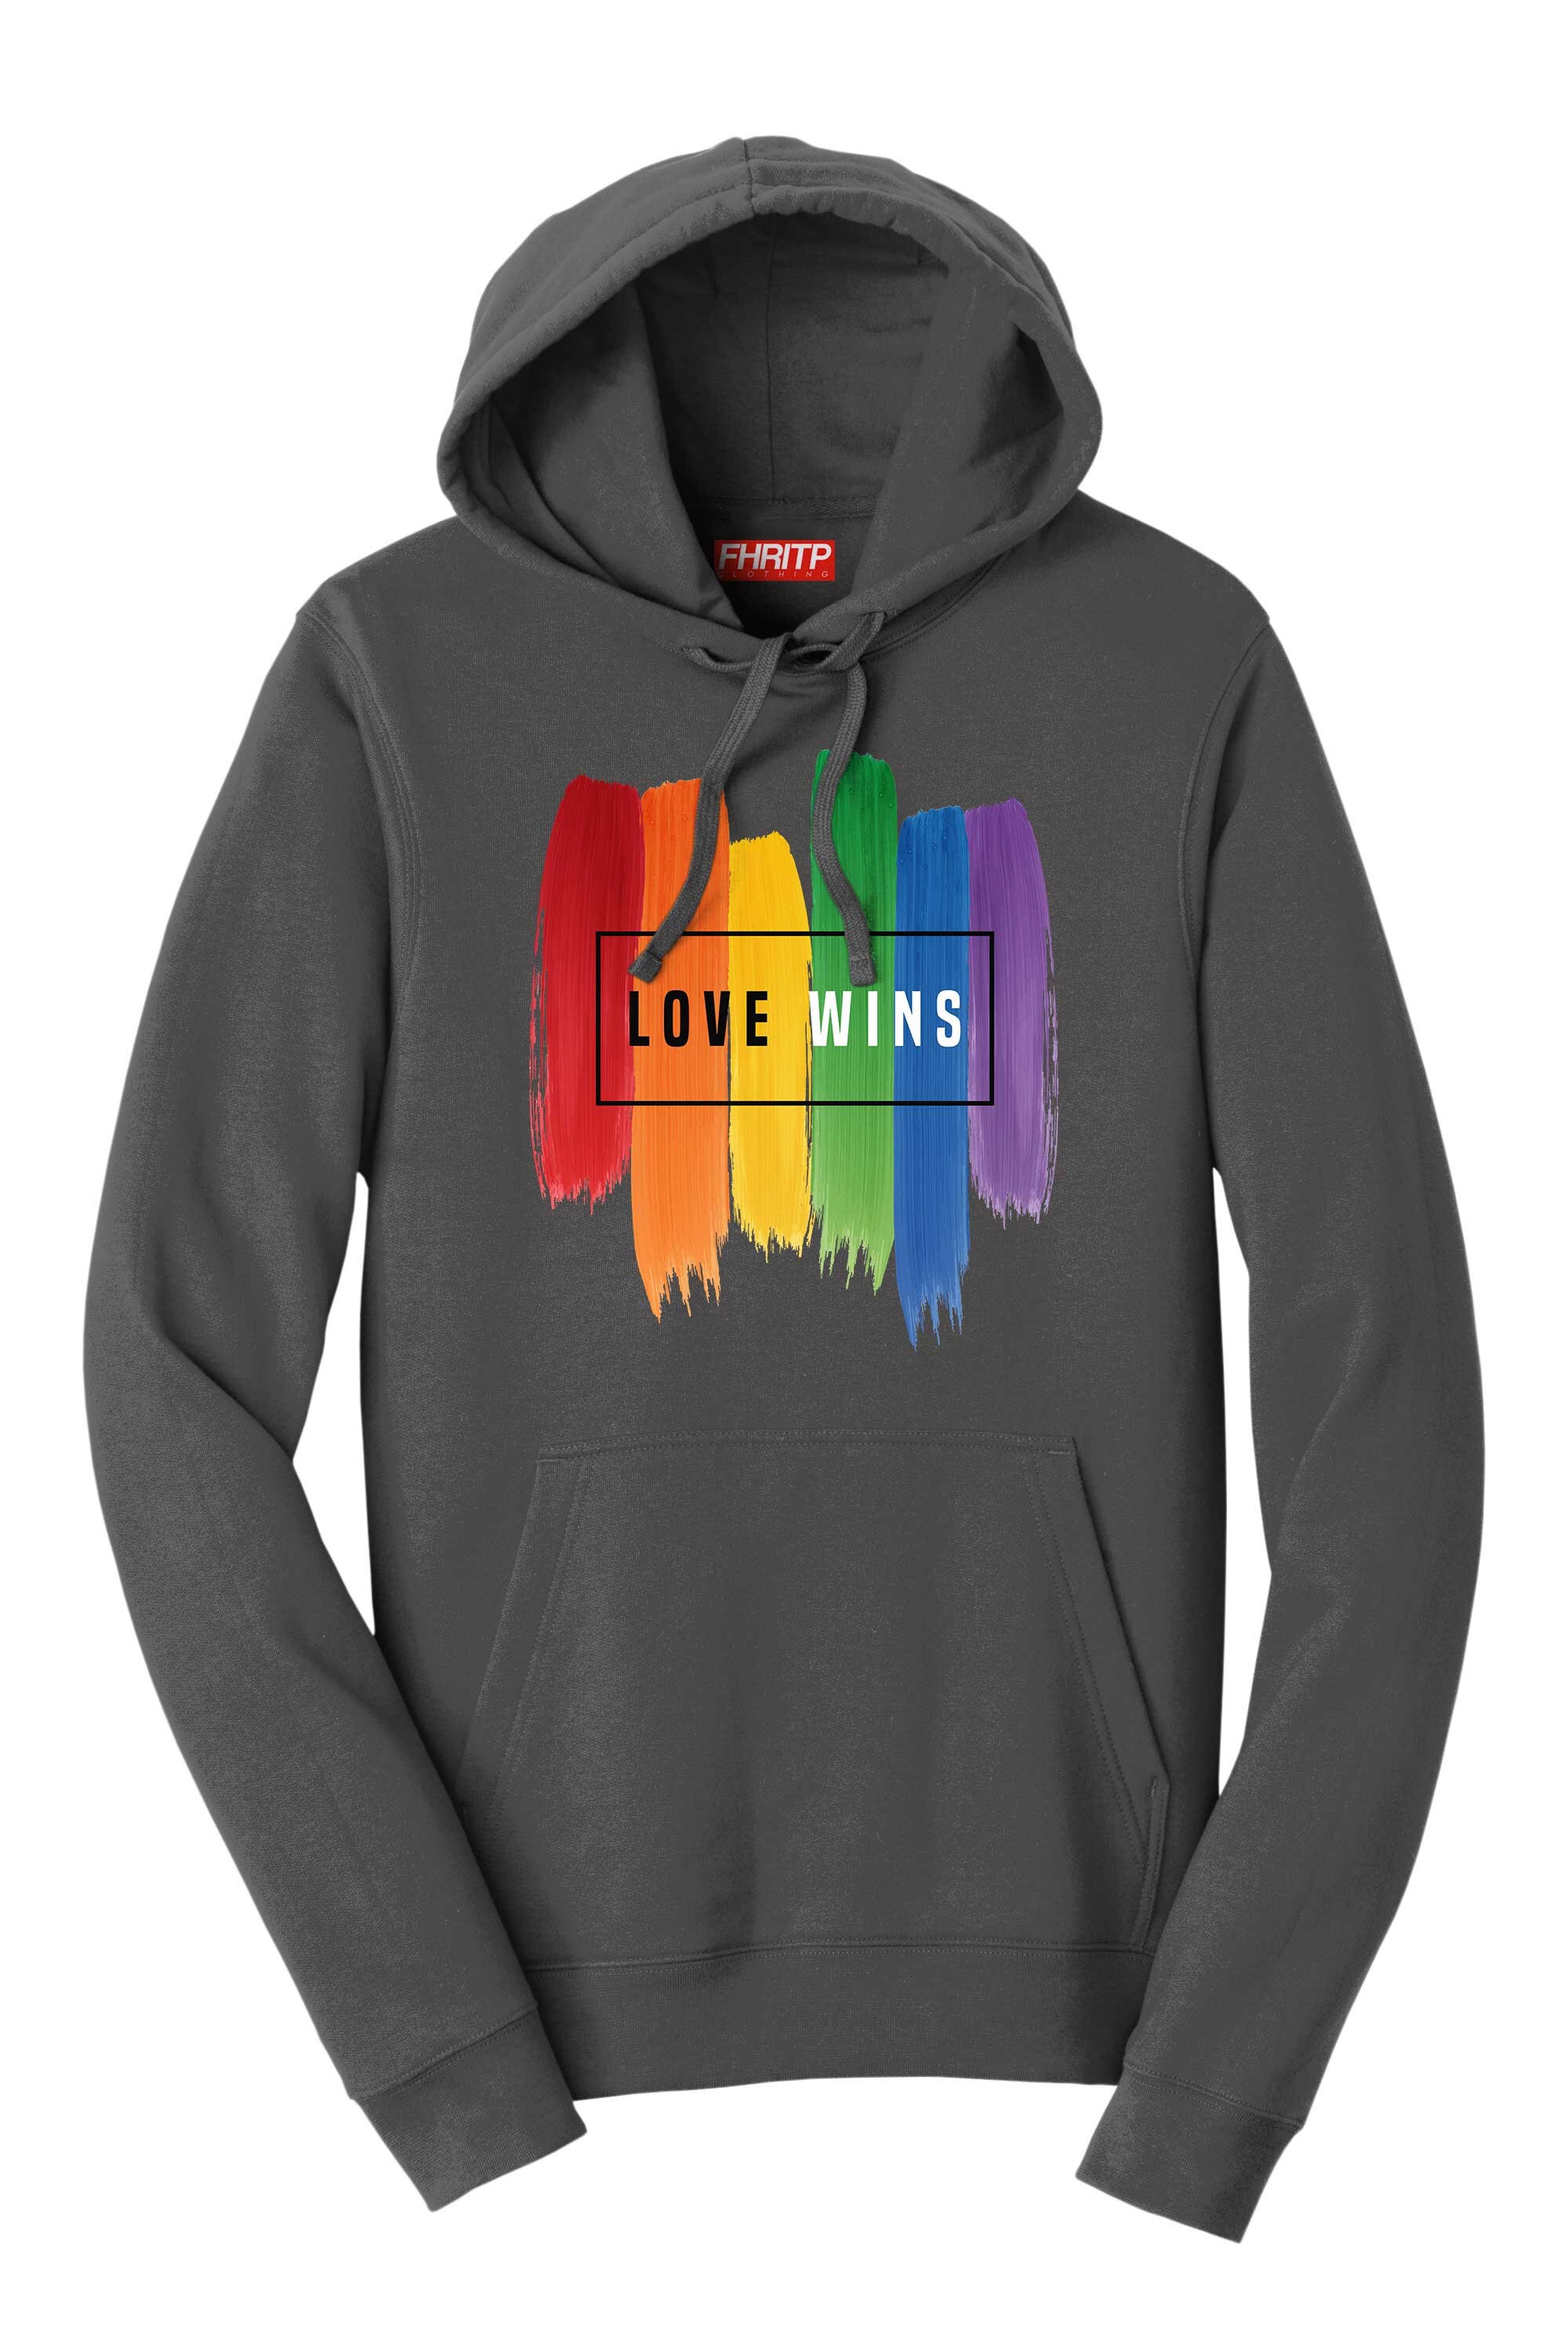 Love Wins LGBT Rainbow Flag Pride Proud Hoodie - Etsy